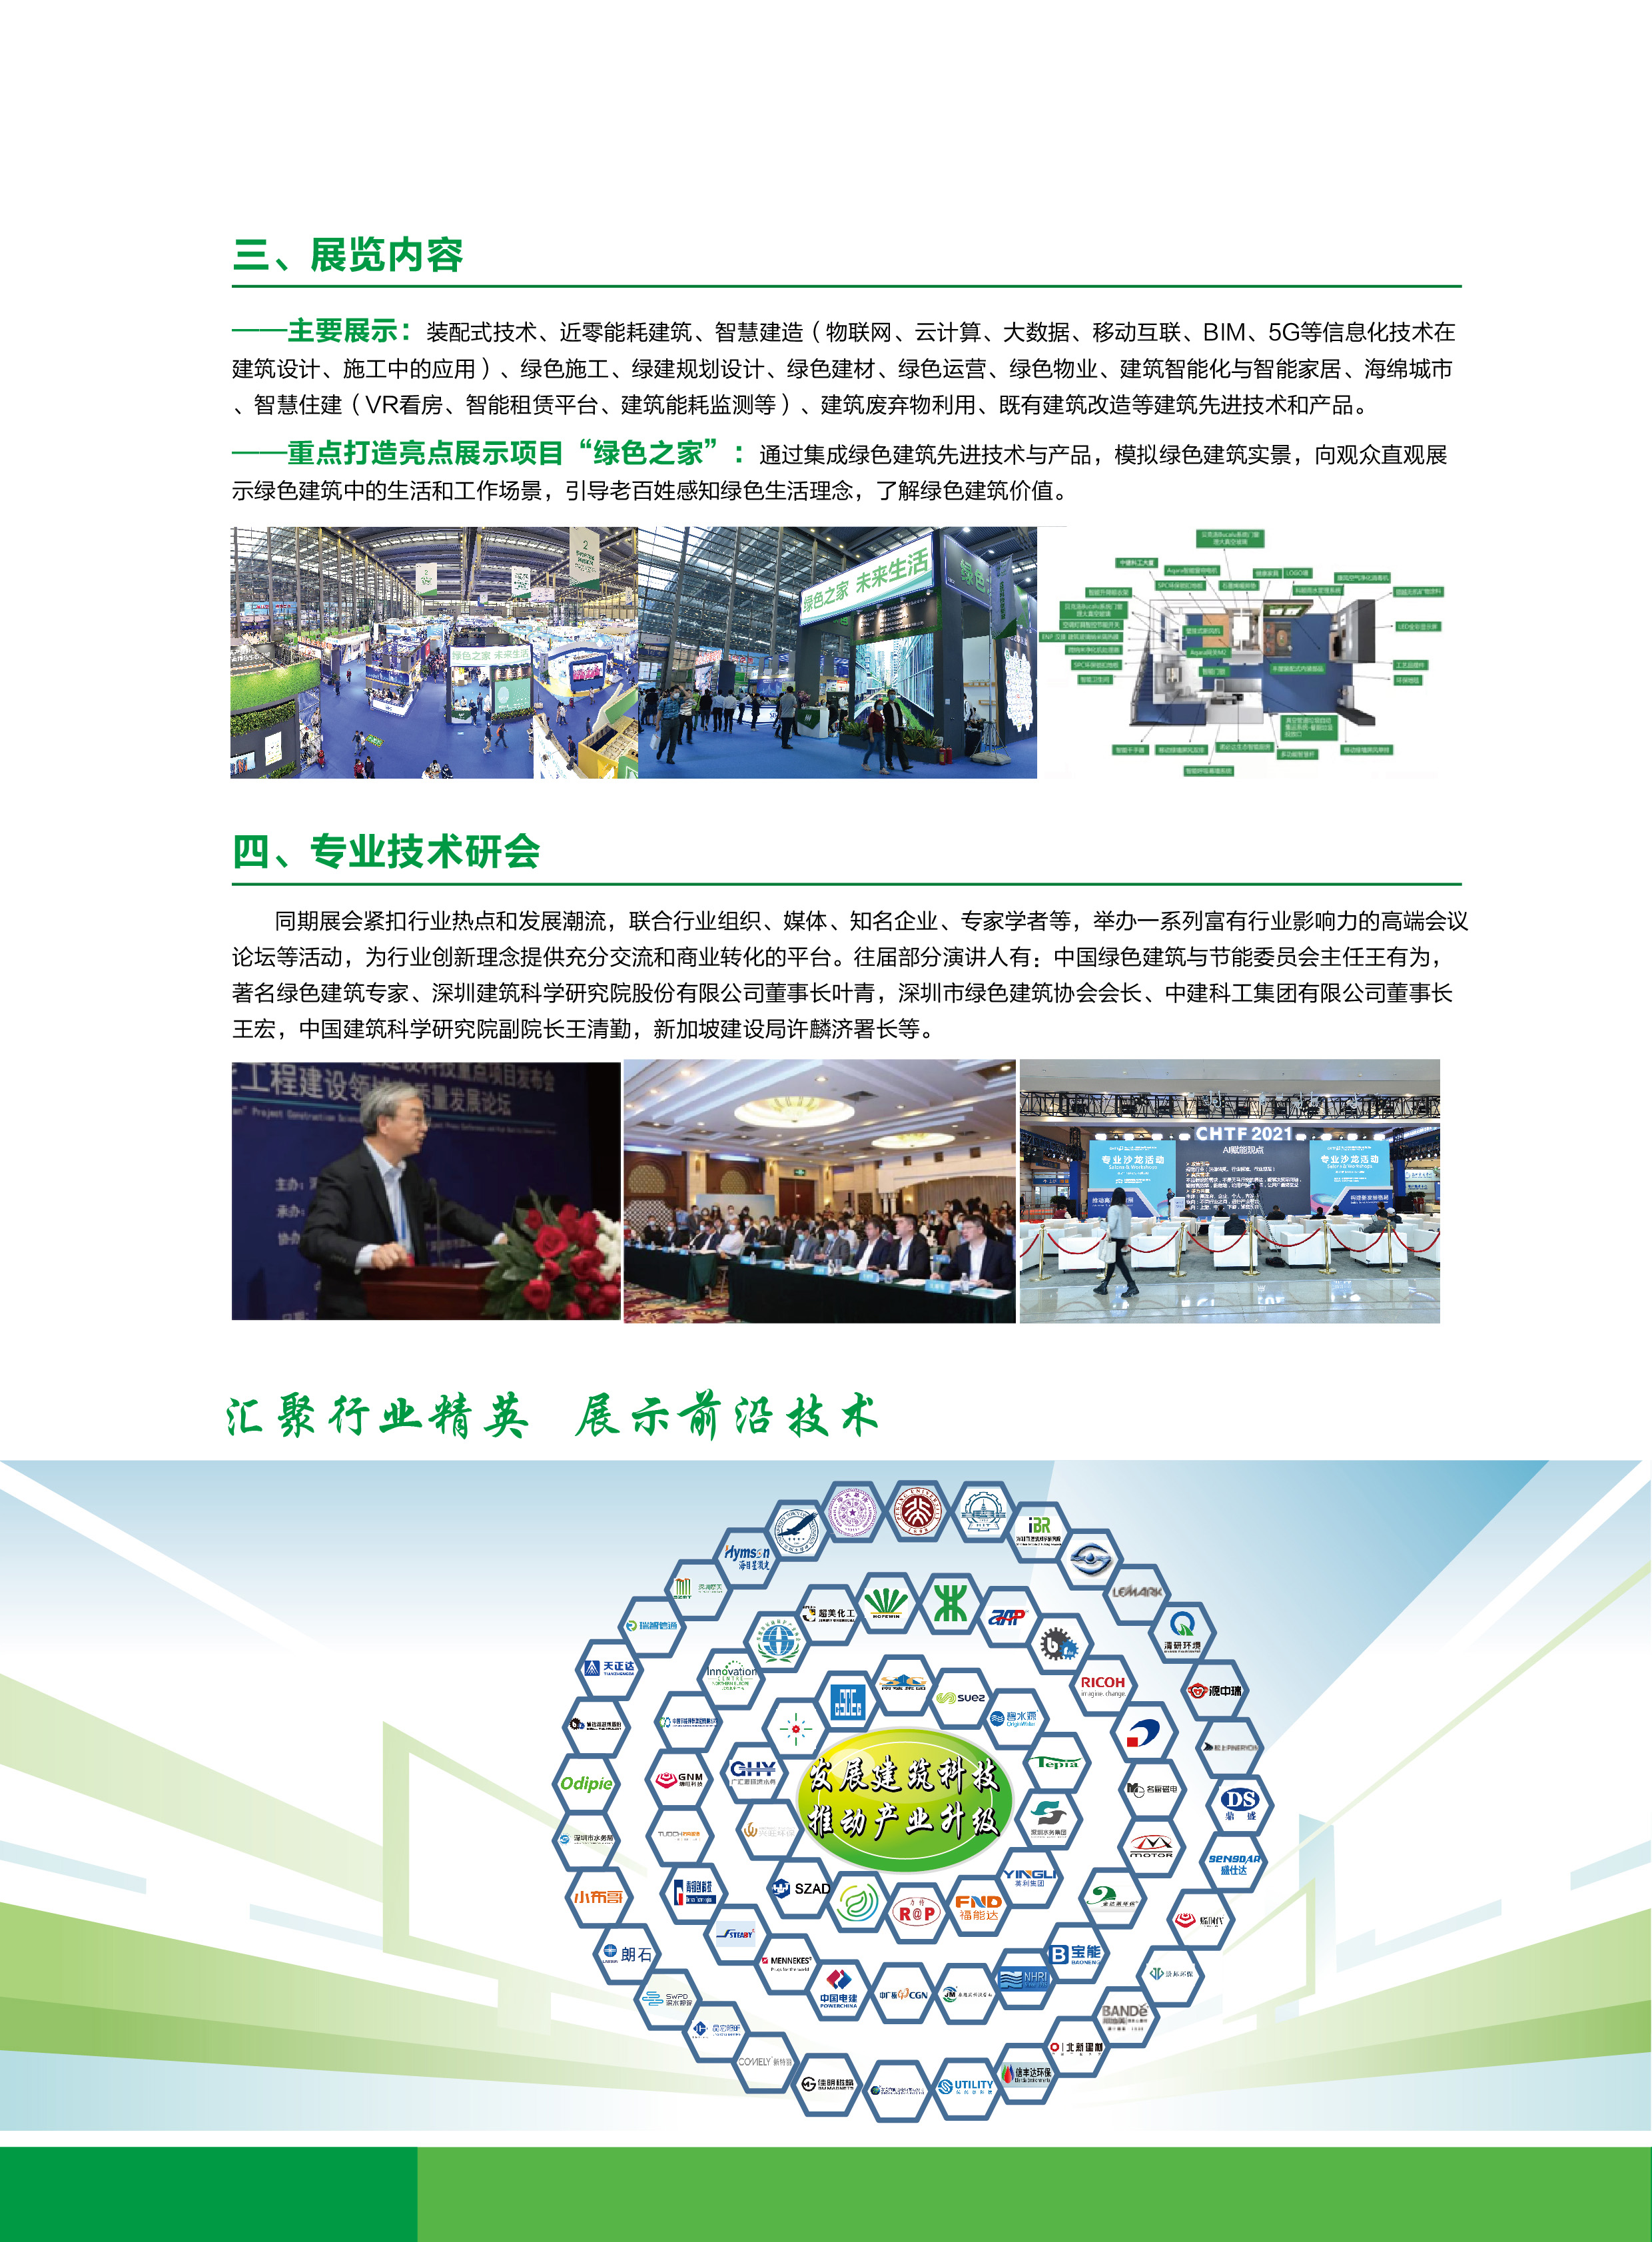 20220525-第24届高交会建筑科技创新展电子版 - 无合作单位部分_页面_3.jpg